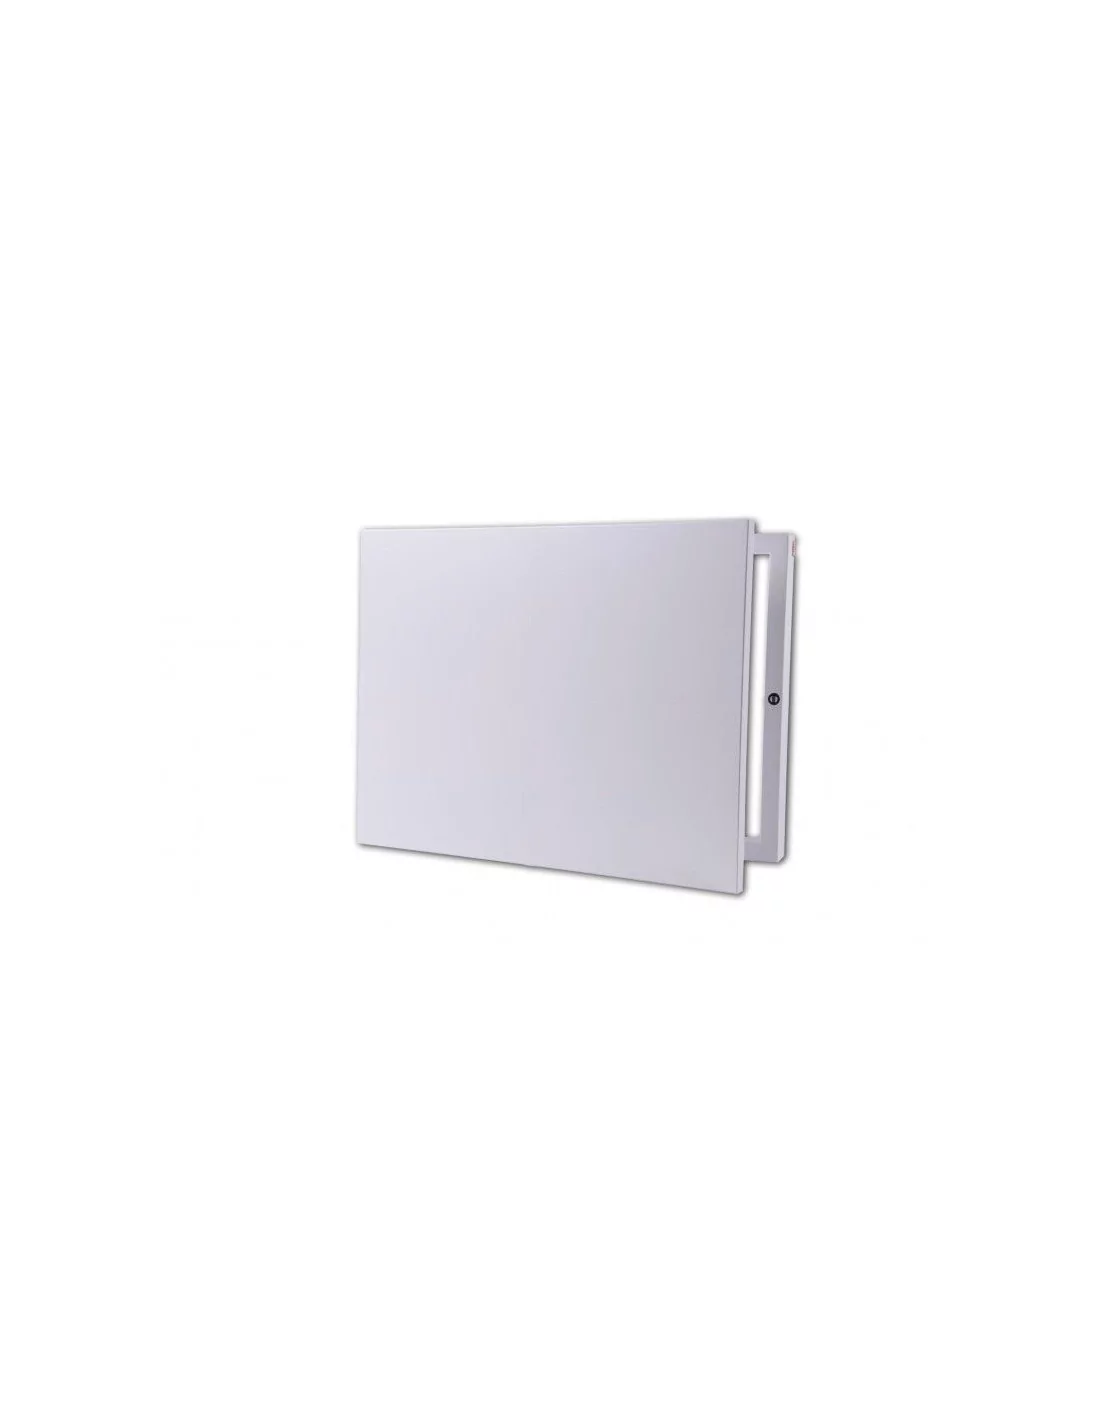 Tapa contador luz vertical abstracto cajón blanco